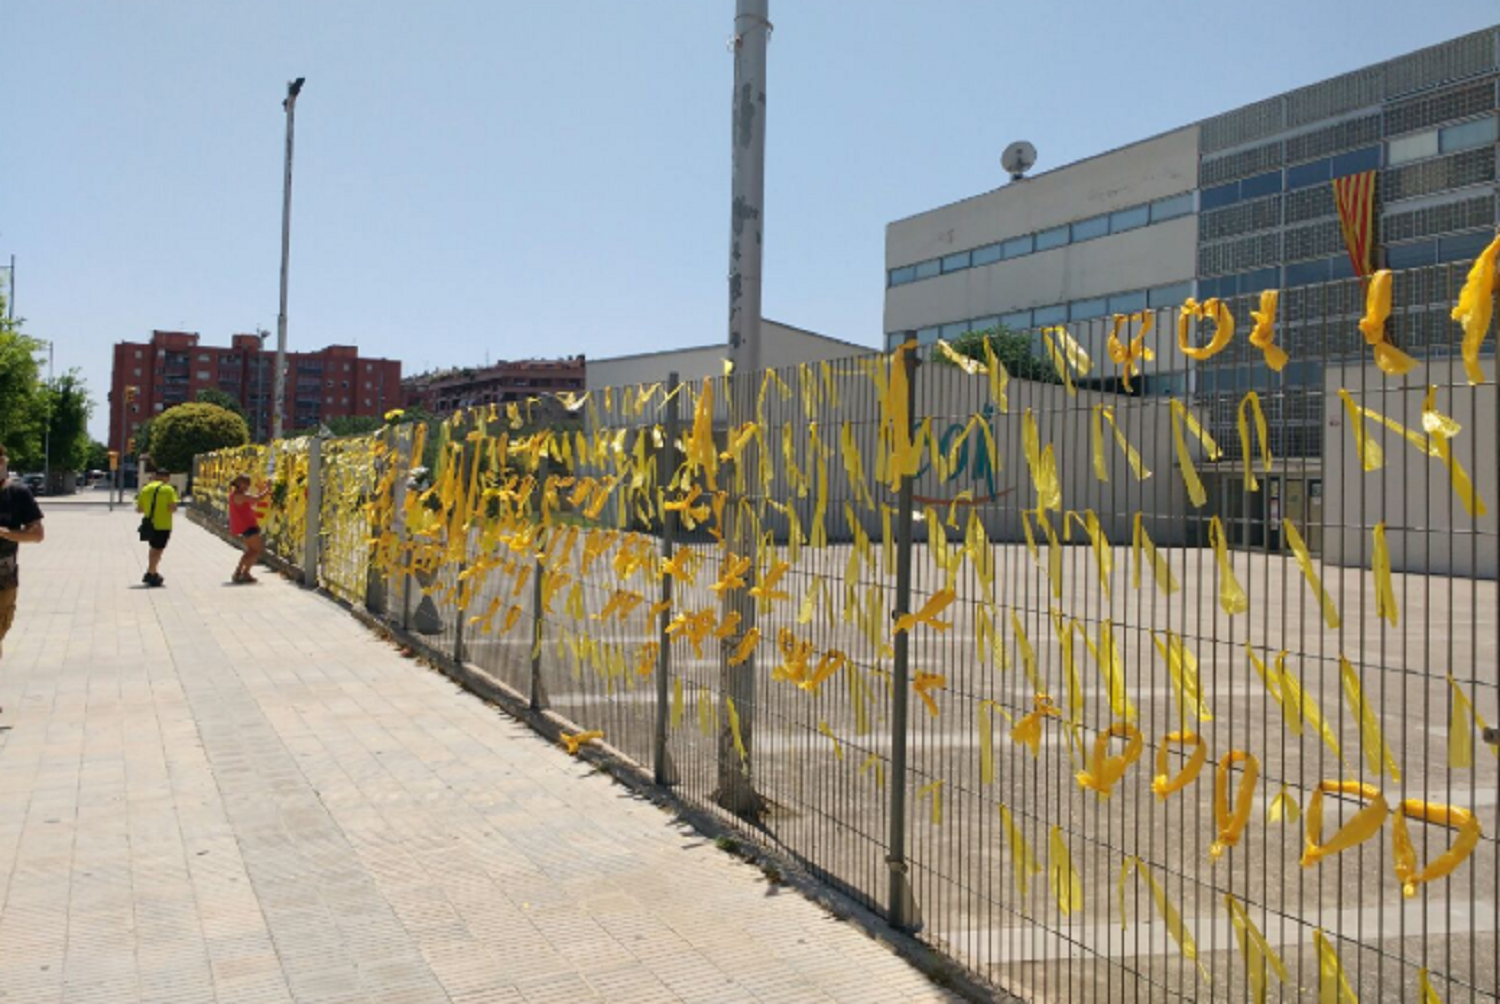 Denuncian que un cargo local del PP gritó "viva España" a un niño